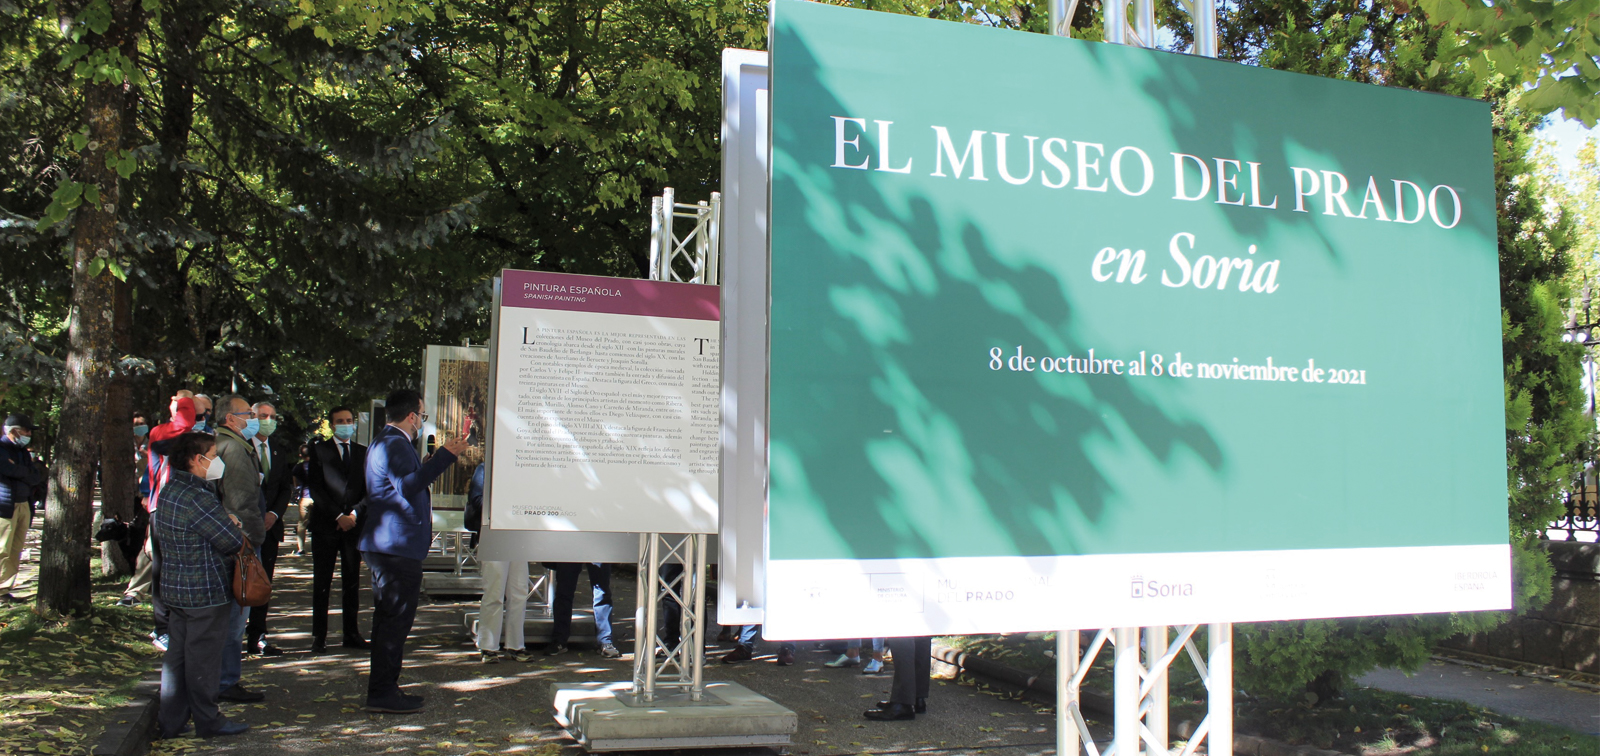 Exposición didáctica: El Museo del Prado en Soria